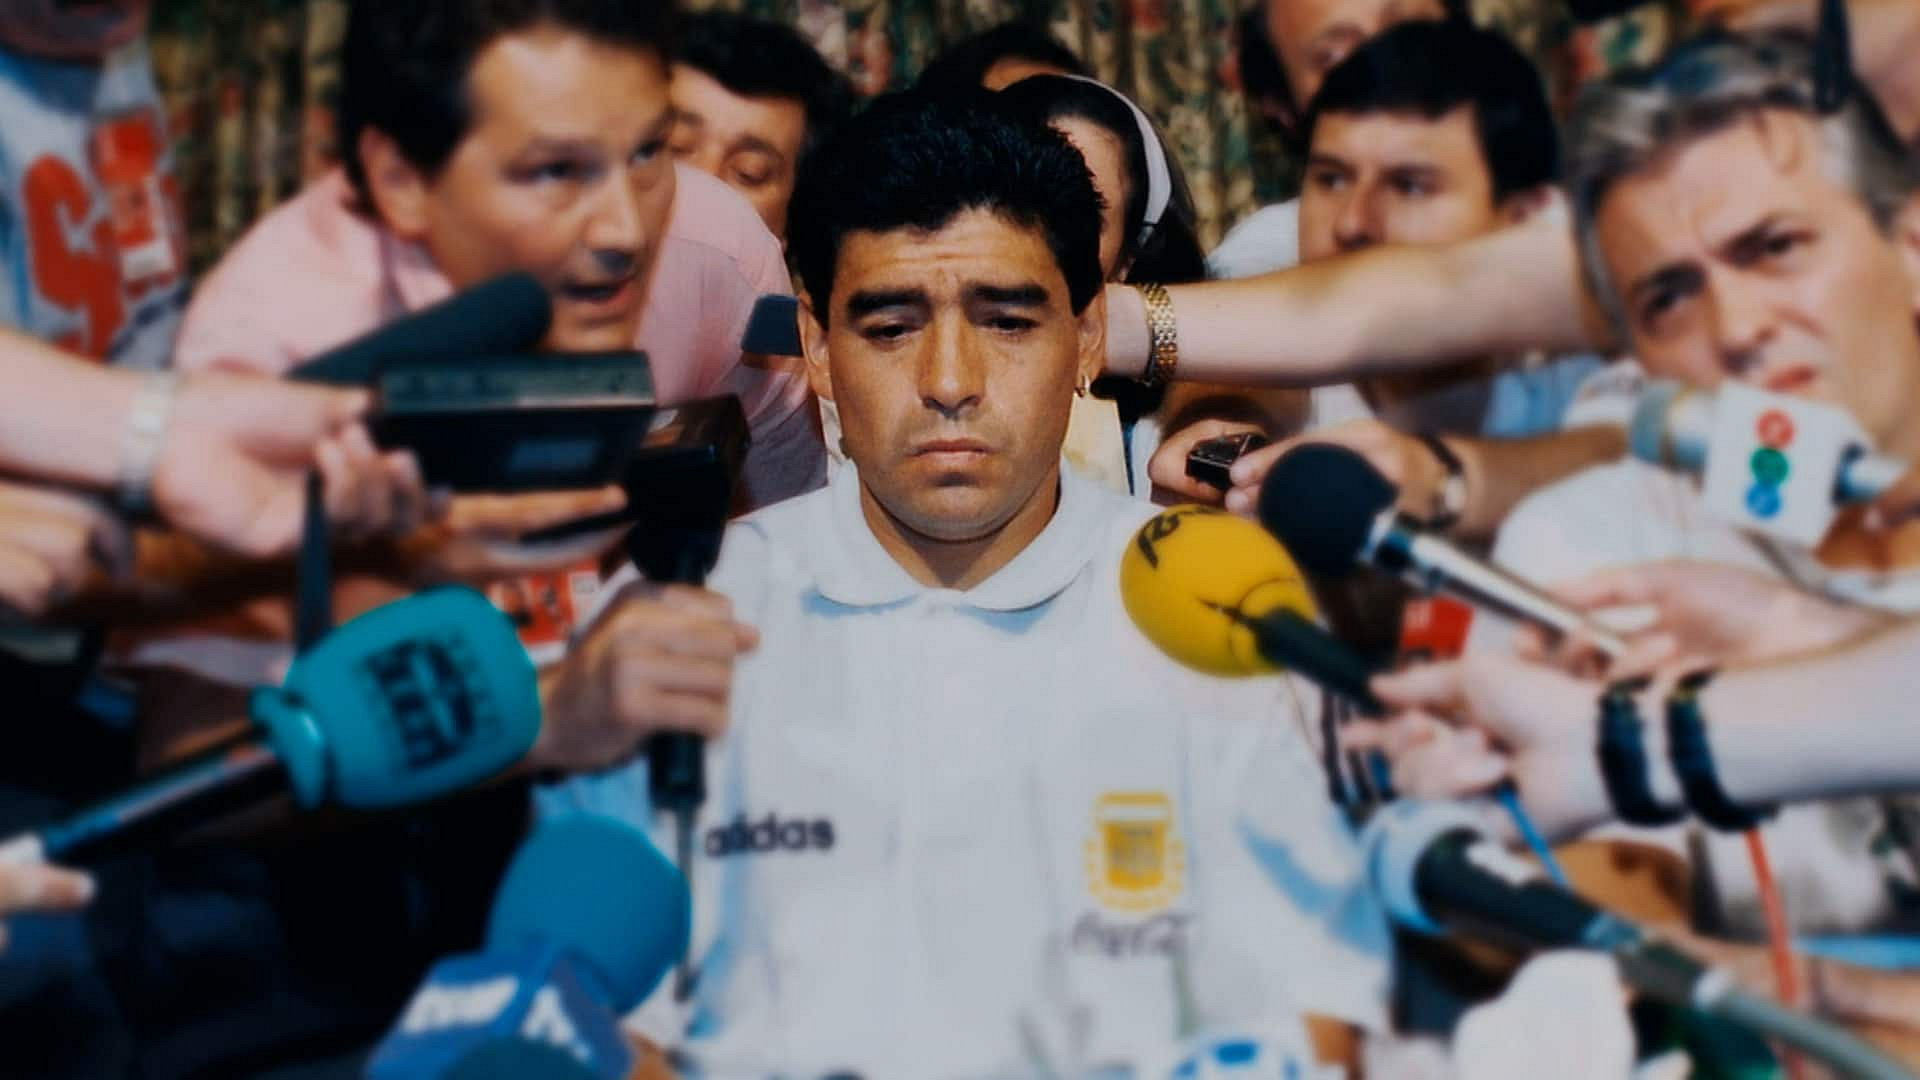 Maradona: The Fall